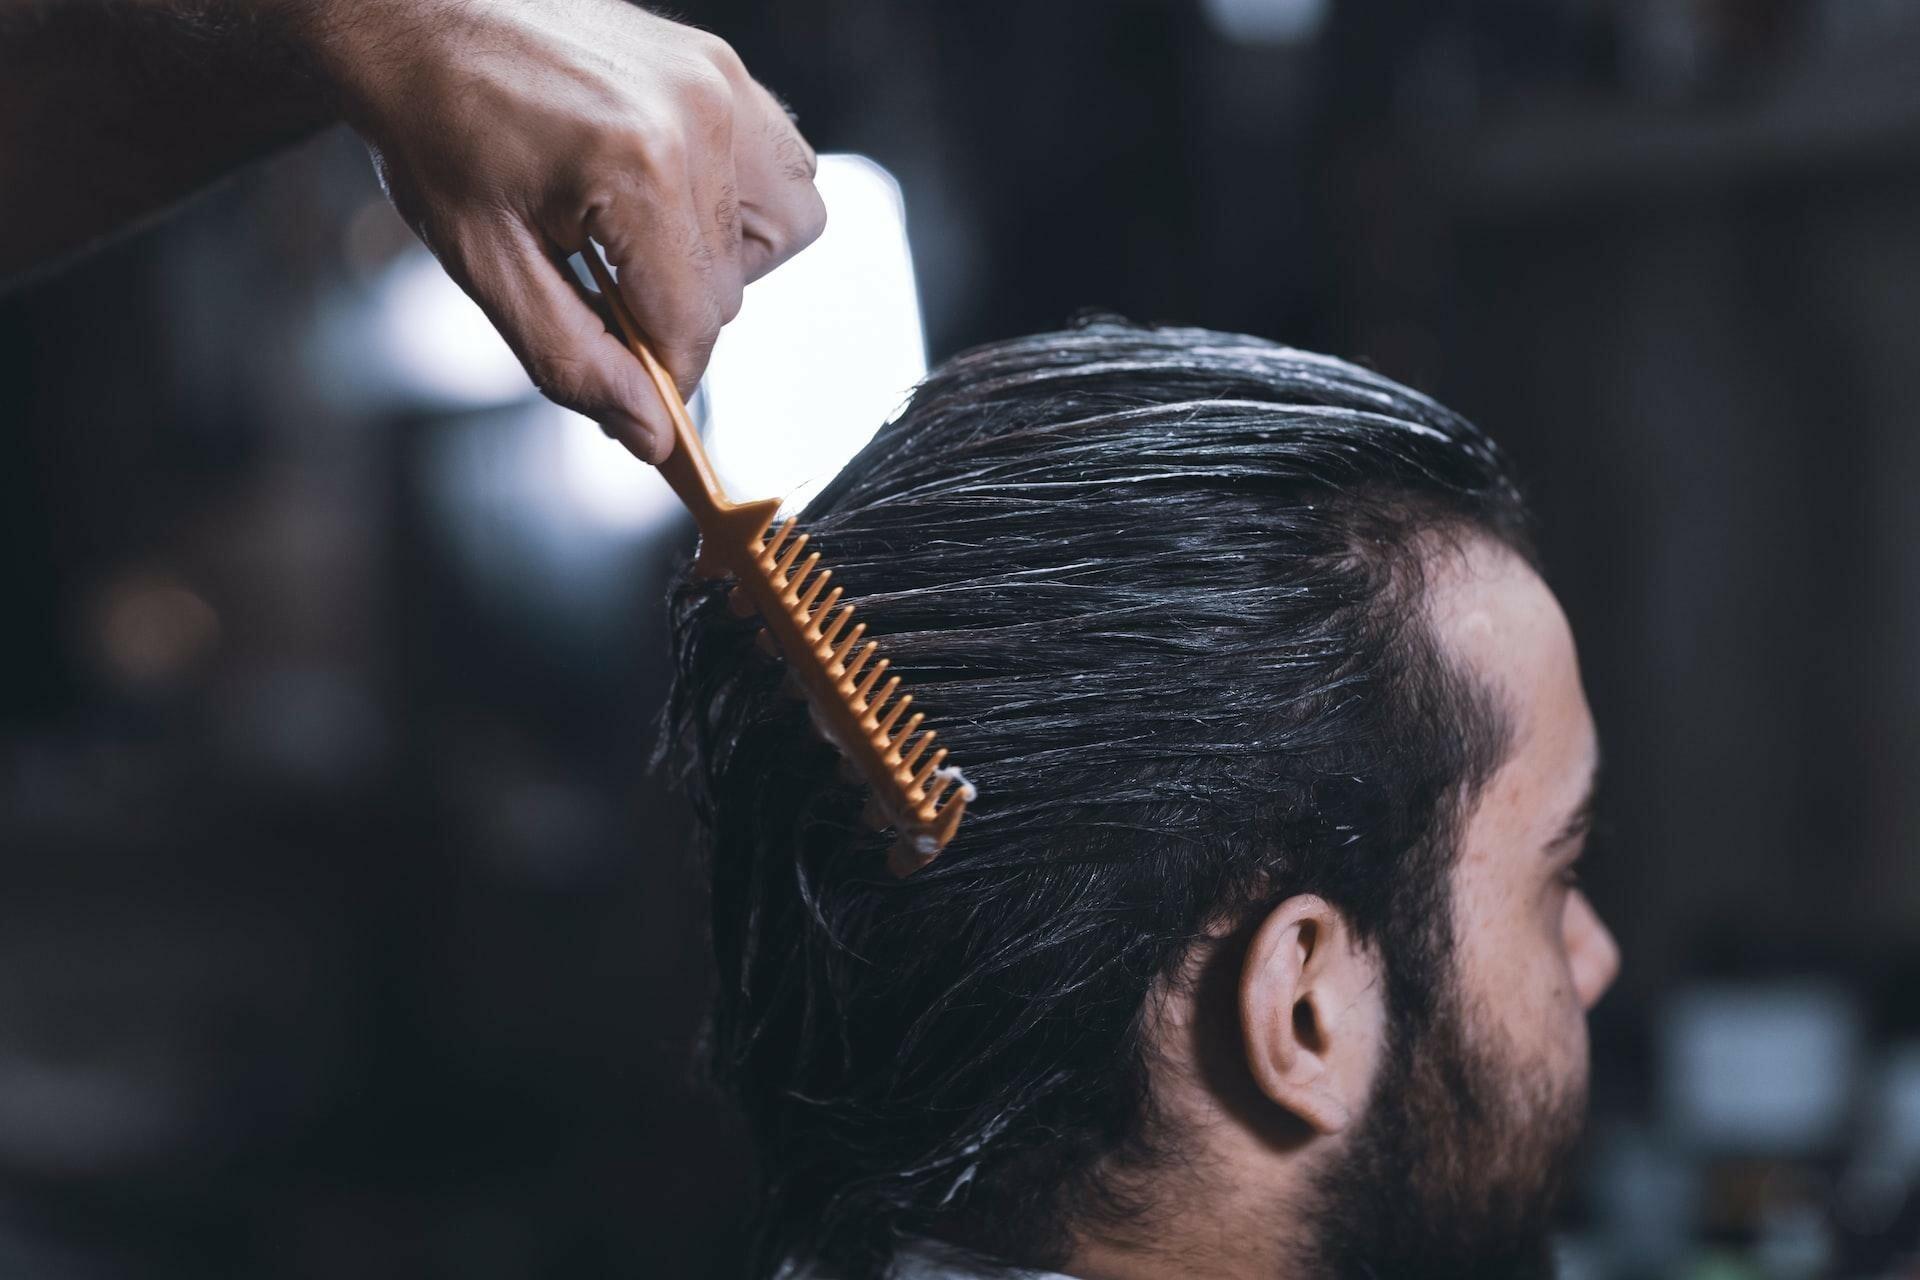 Starostlivosť o vlasovú pokožku a zdravie vlasov u mužov: Na čo nezabúdať?